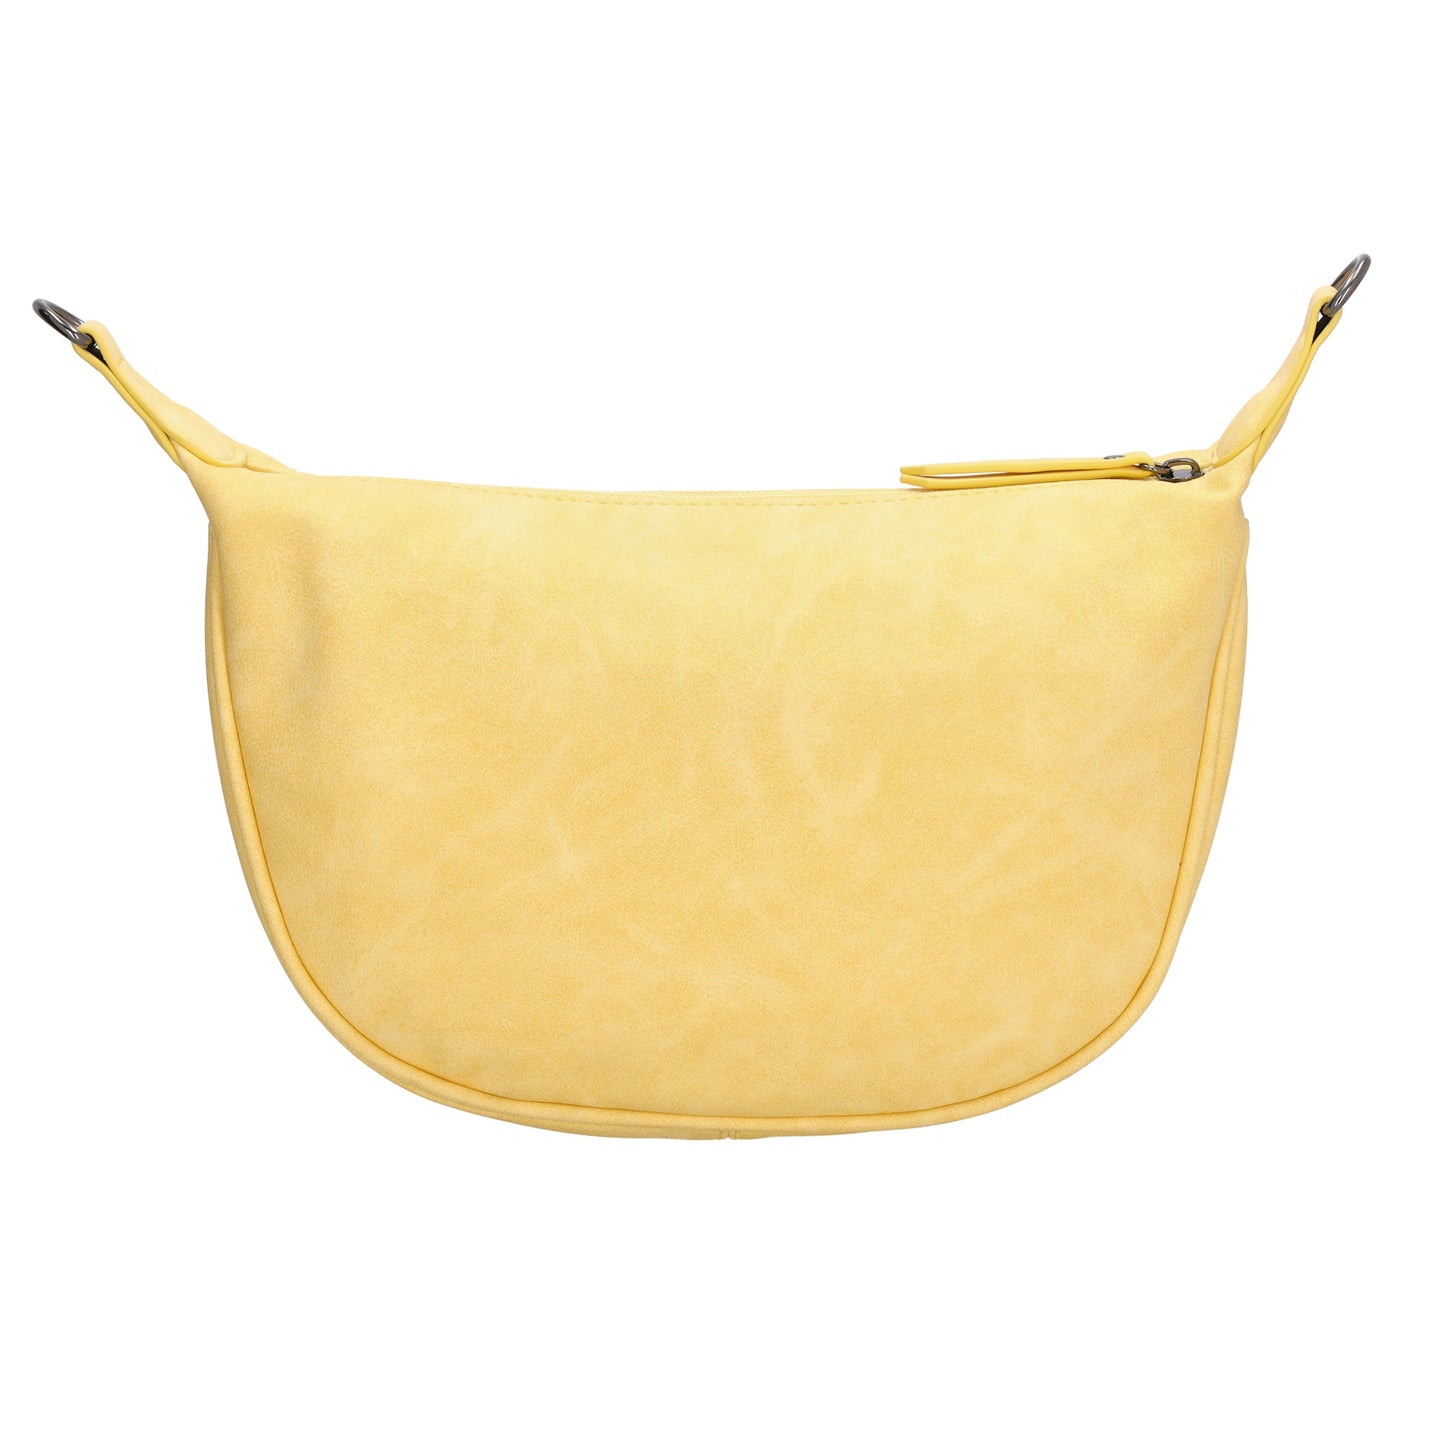 Bodybag 28 x 18cm in marmorierter Optik Gelb